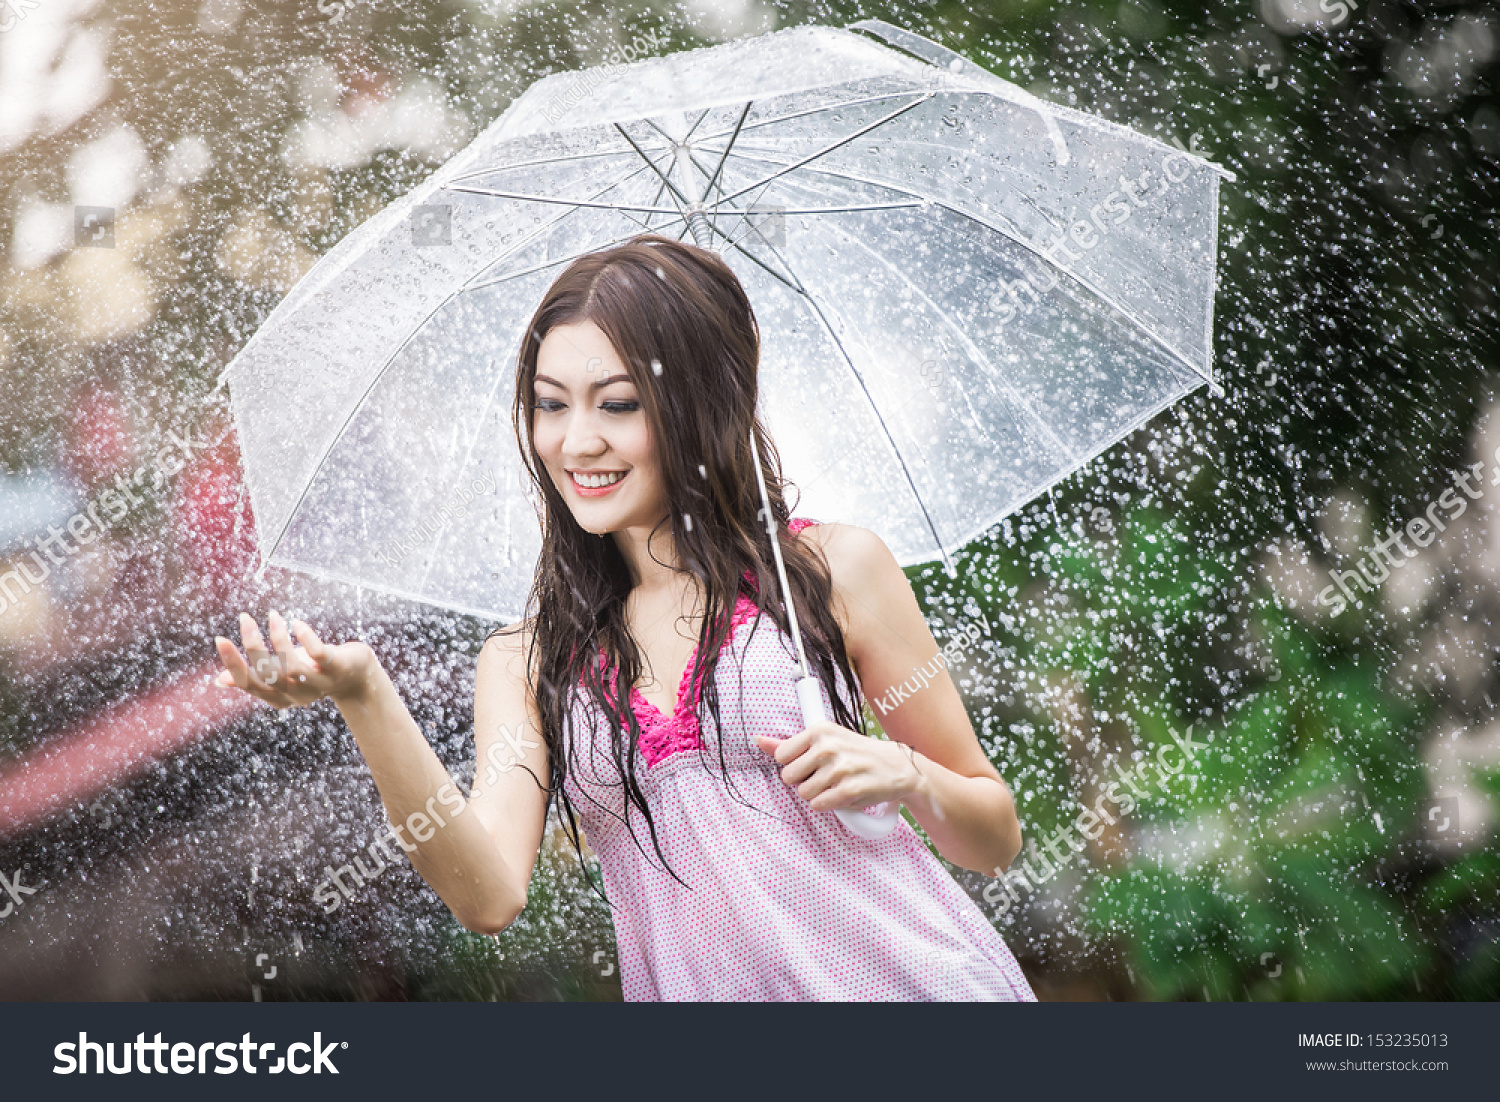 Beautiful Girl In The Rain With Stock Photo 153235013